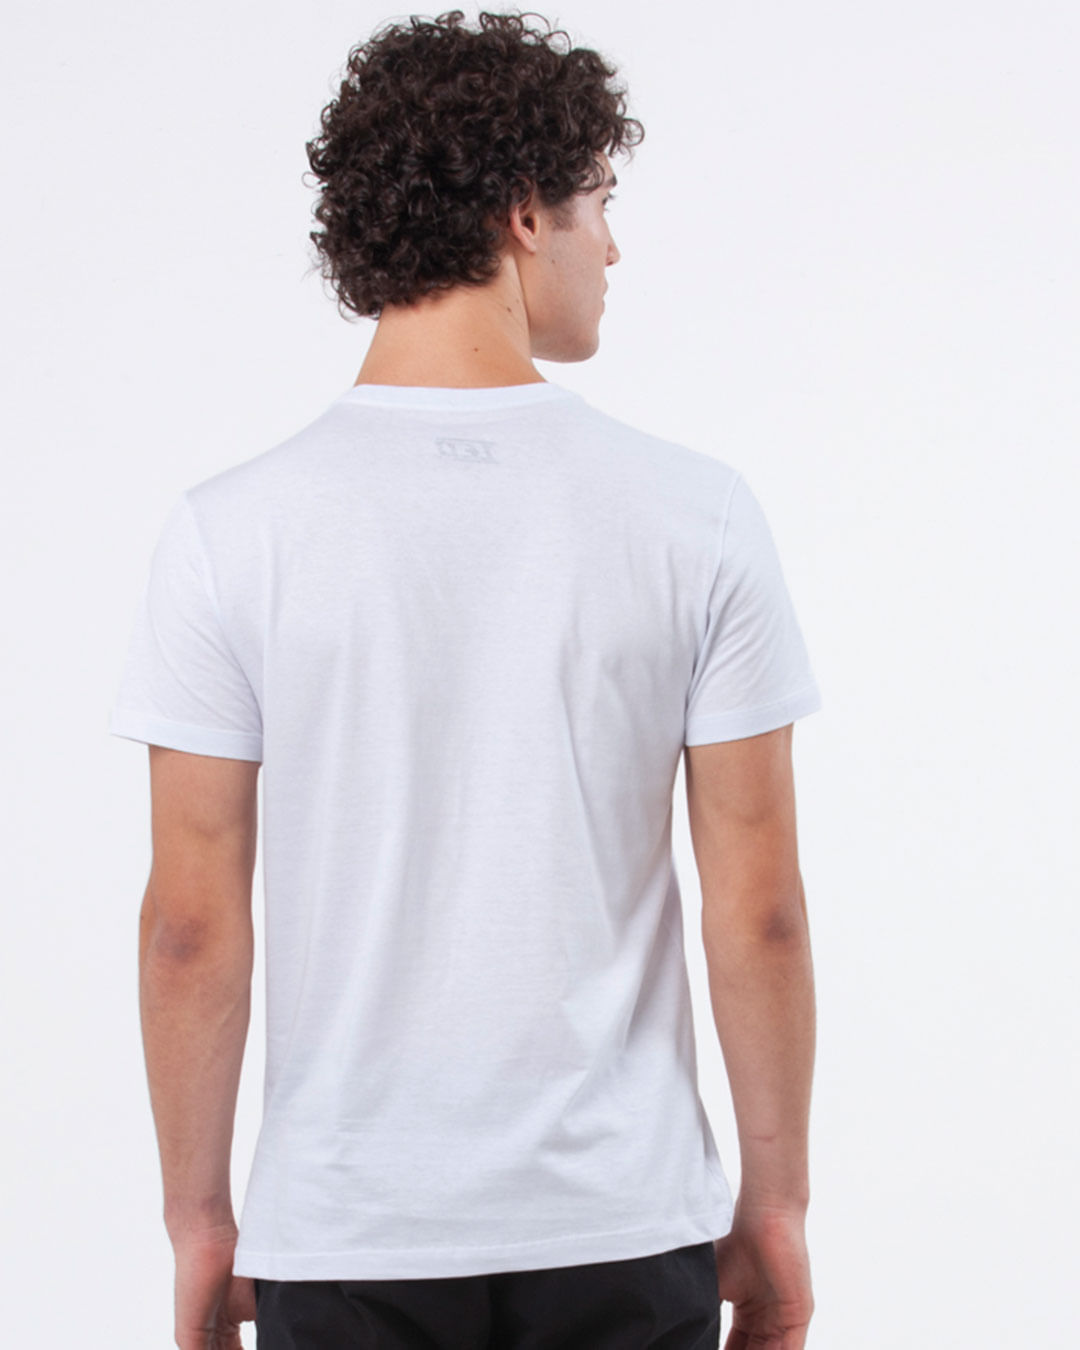 Camiseta-Masculina-Regular-Estampa-Colegial-Branco